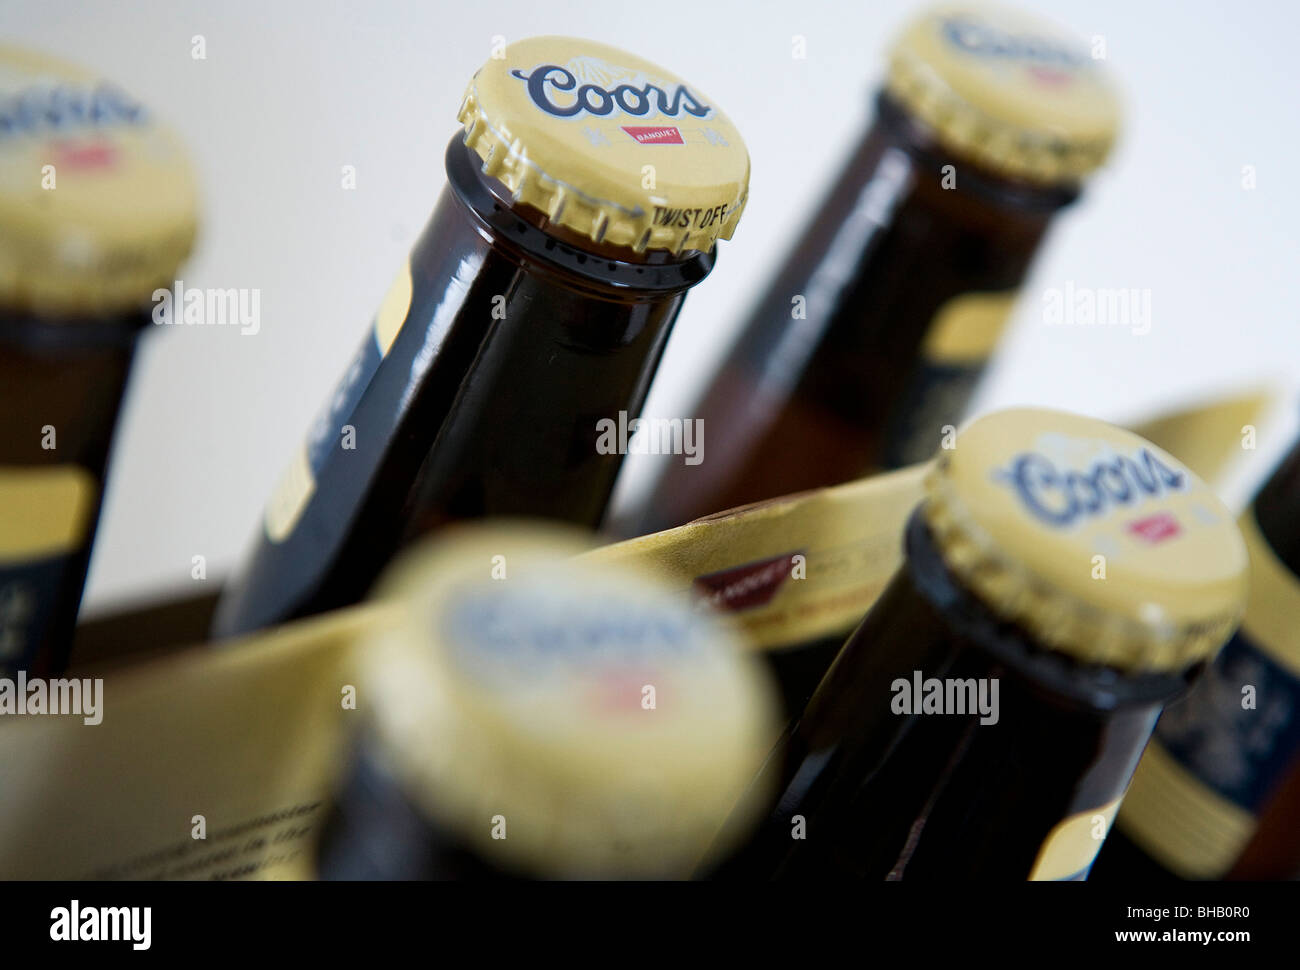 Una agrupación de las botellas de cerveza Coors. Foto de stock